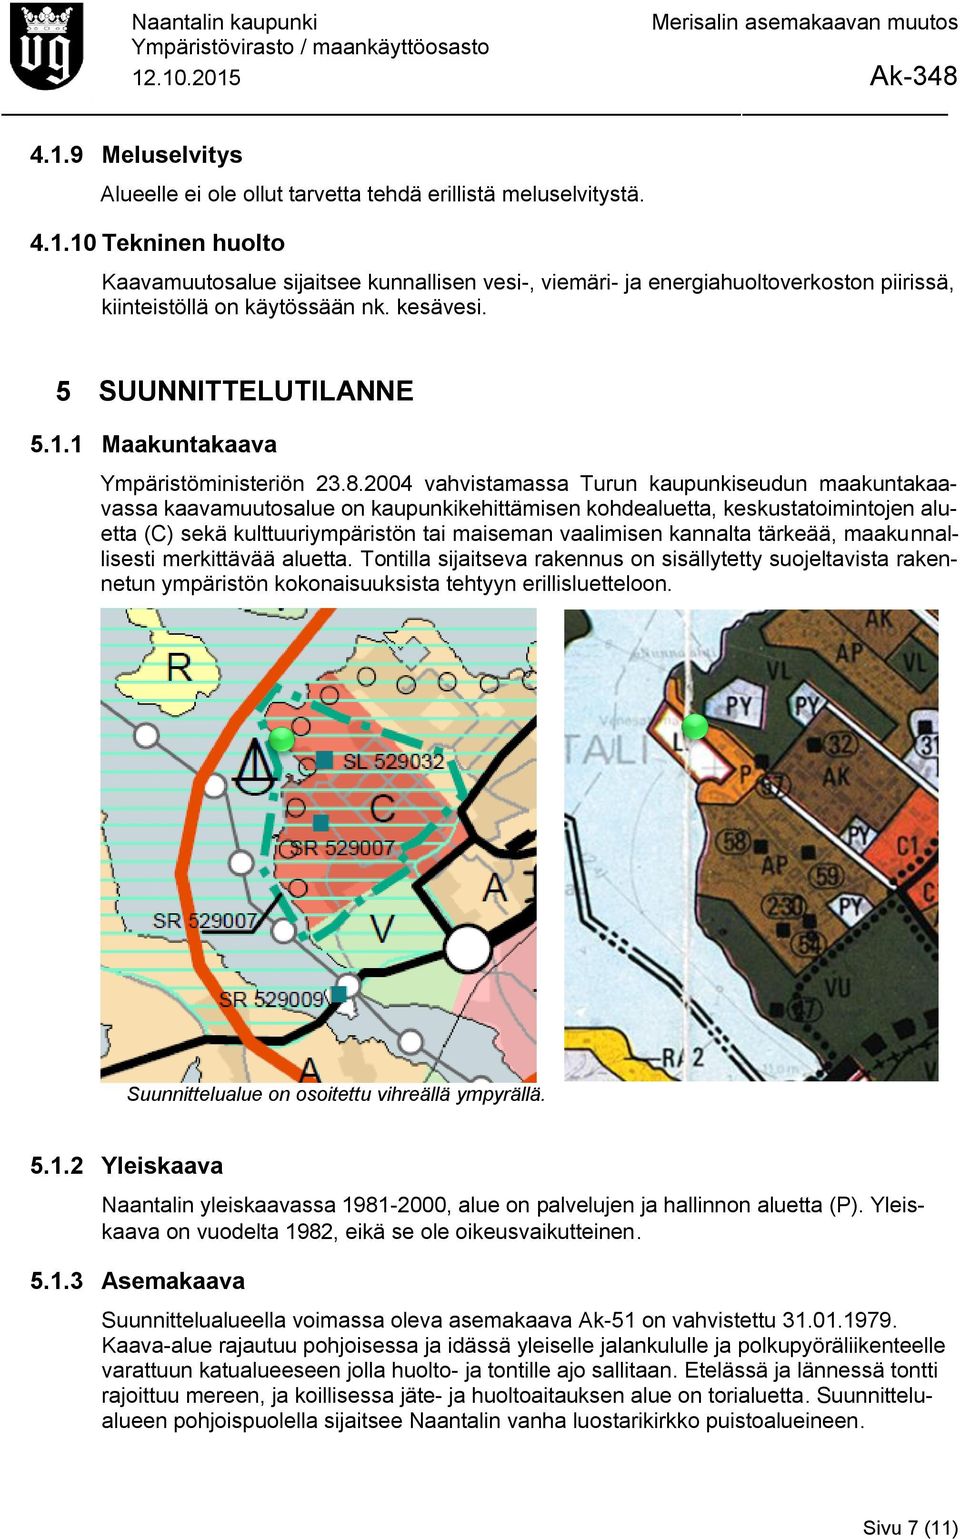 2004 vahvistamassa Turun kaupunkiseudun maakuntakaavassa kaavamuutosalue on kaupunkikehittämisen kohdealuetta, keskustatoimintojen aluetta (C) sekä kulttuuriympäristön tai maiseman vaalimisen